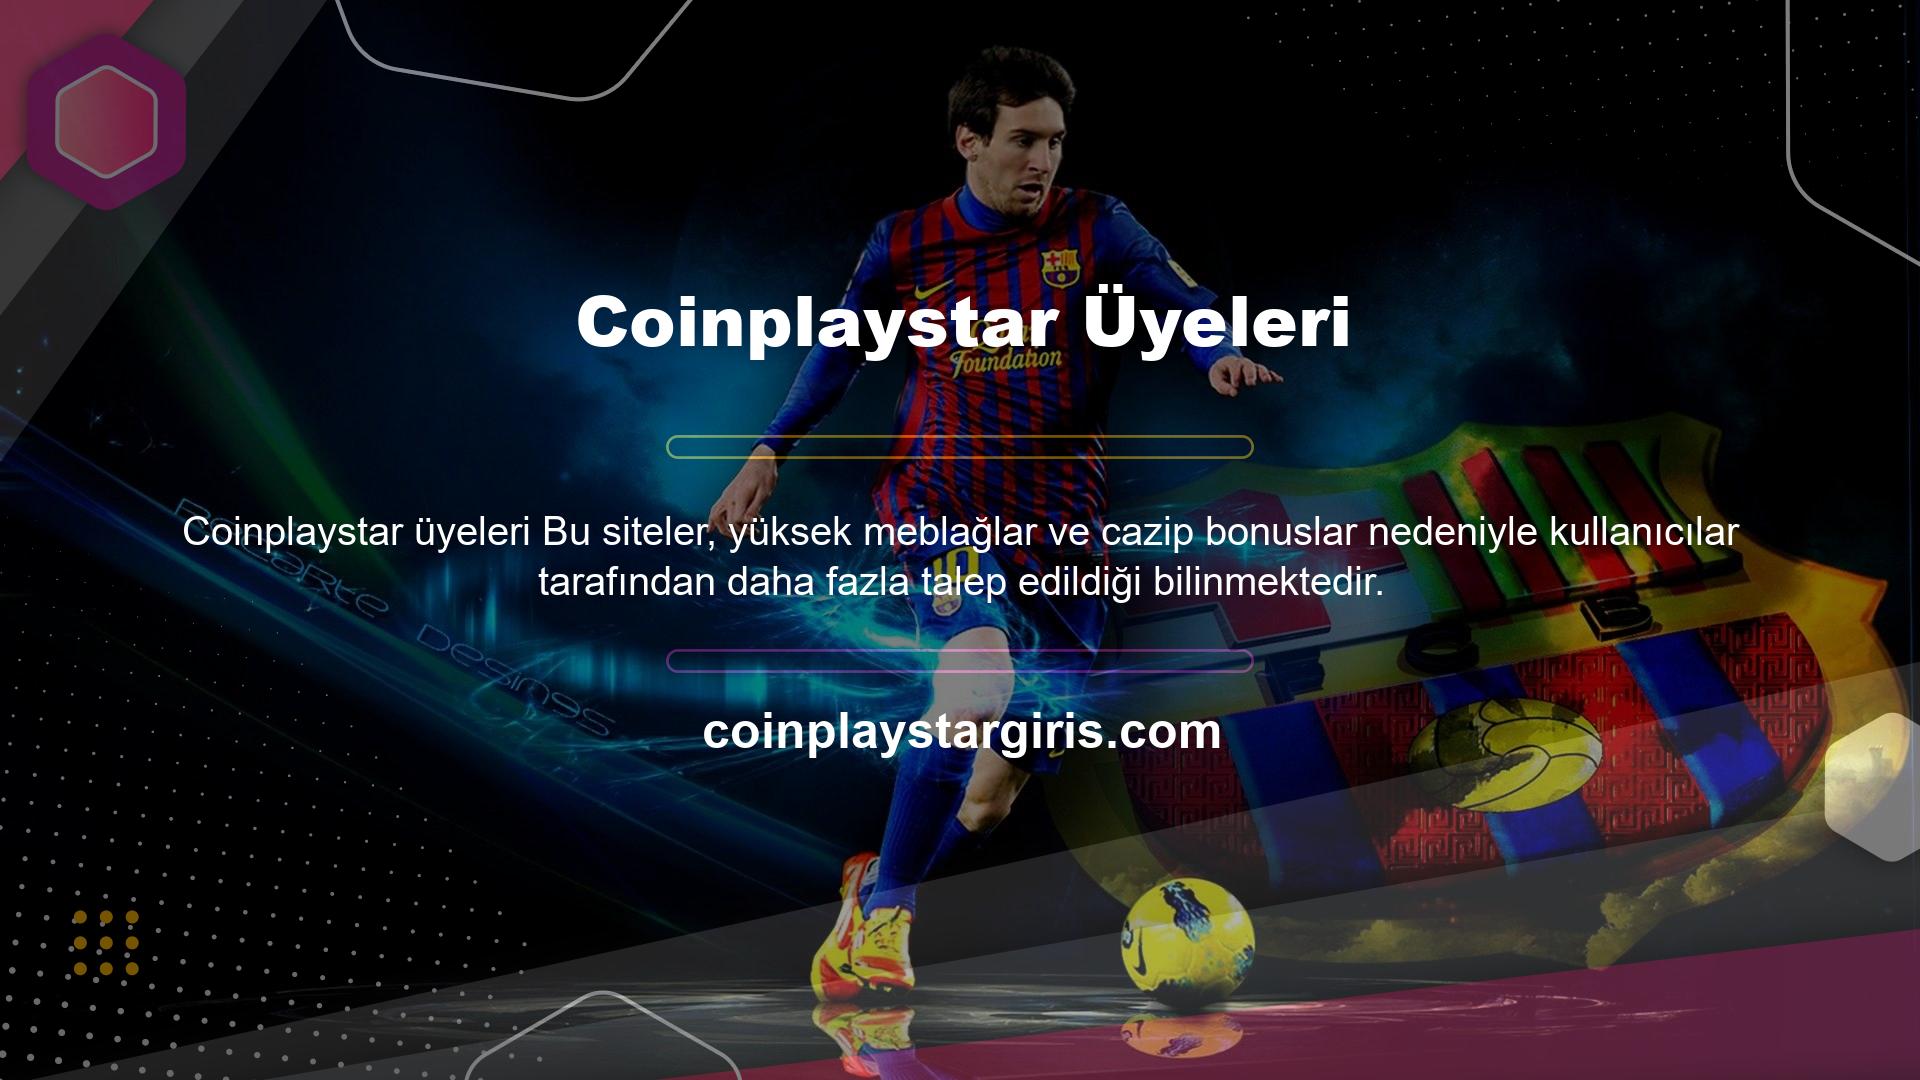 Coinplaystar Bahis, kayıt ücreti talep etmeyen lisanslı adreslerden biri olarak yayın yaparak Türkçe olarak destek hizmetleri sunmaktadır